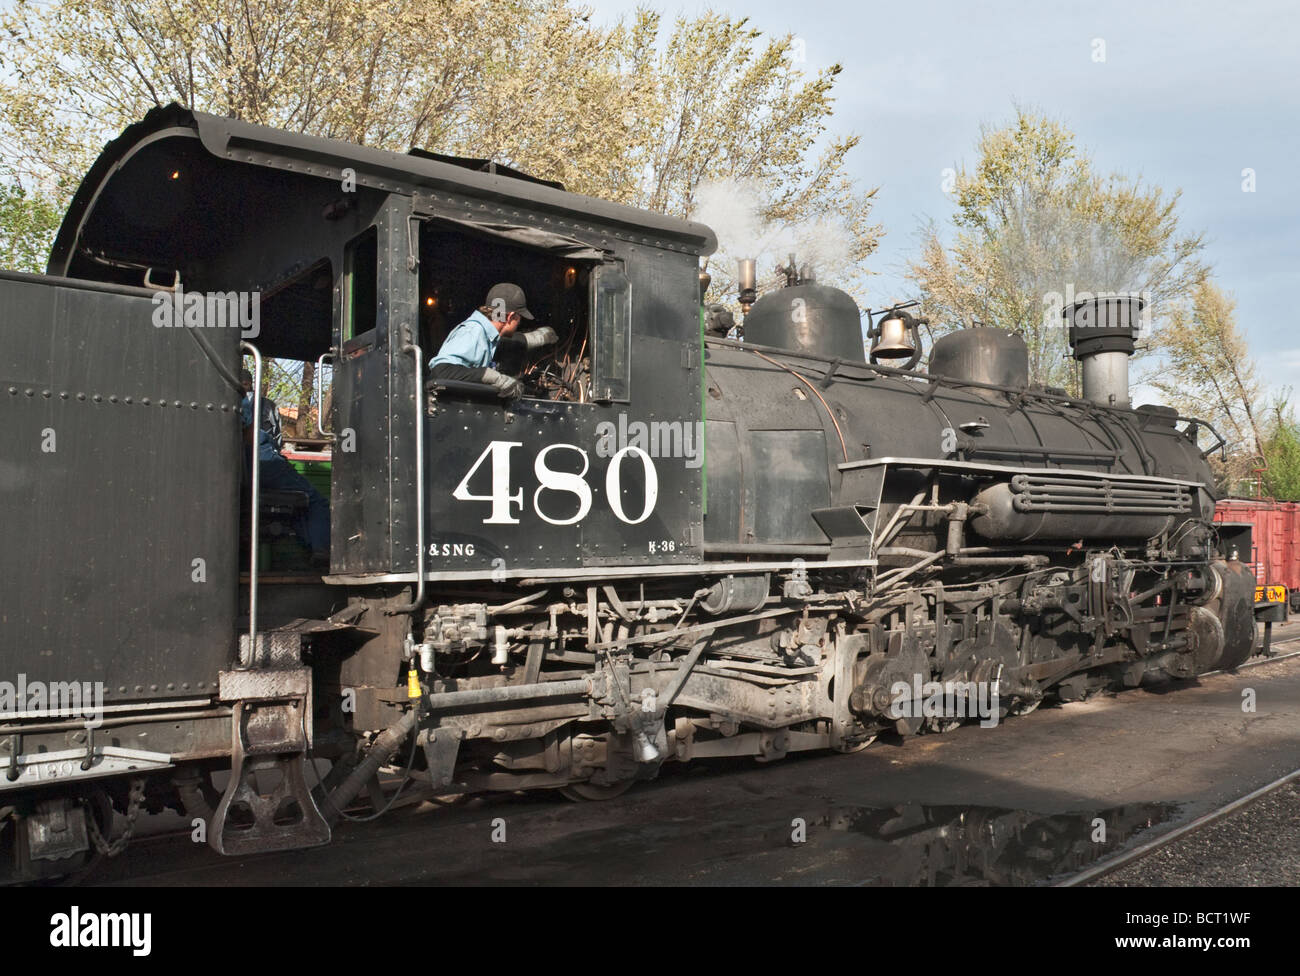 Colorado Durango Durango Silverton Narrow Gauge Railroad locomotive à vapeur Banque D'Images